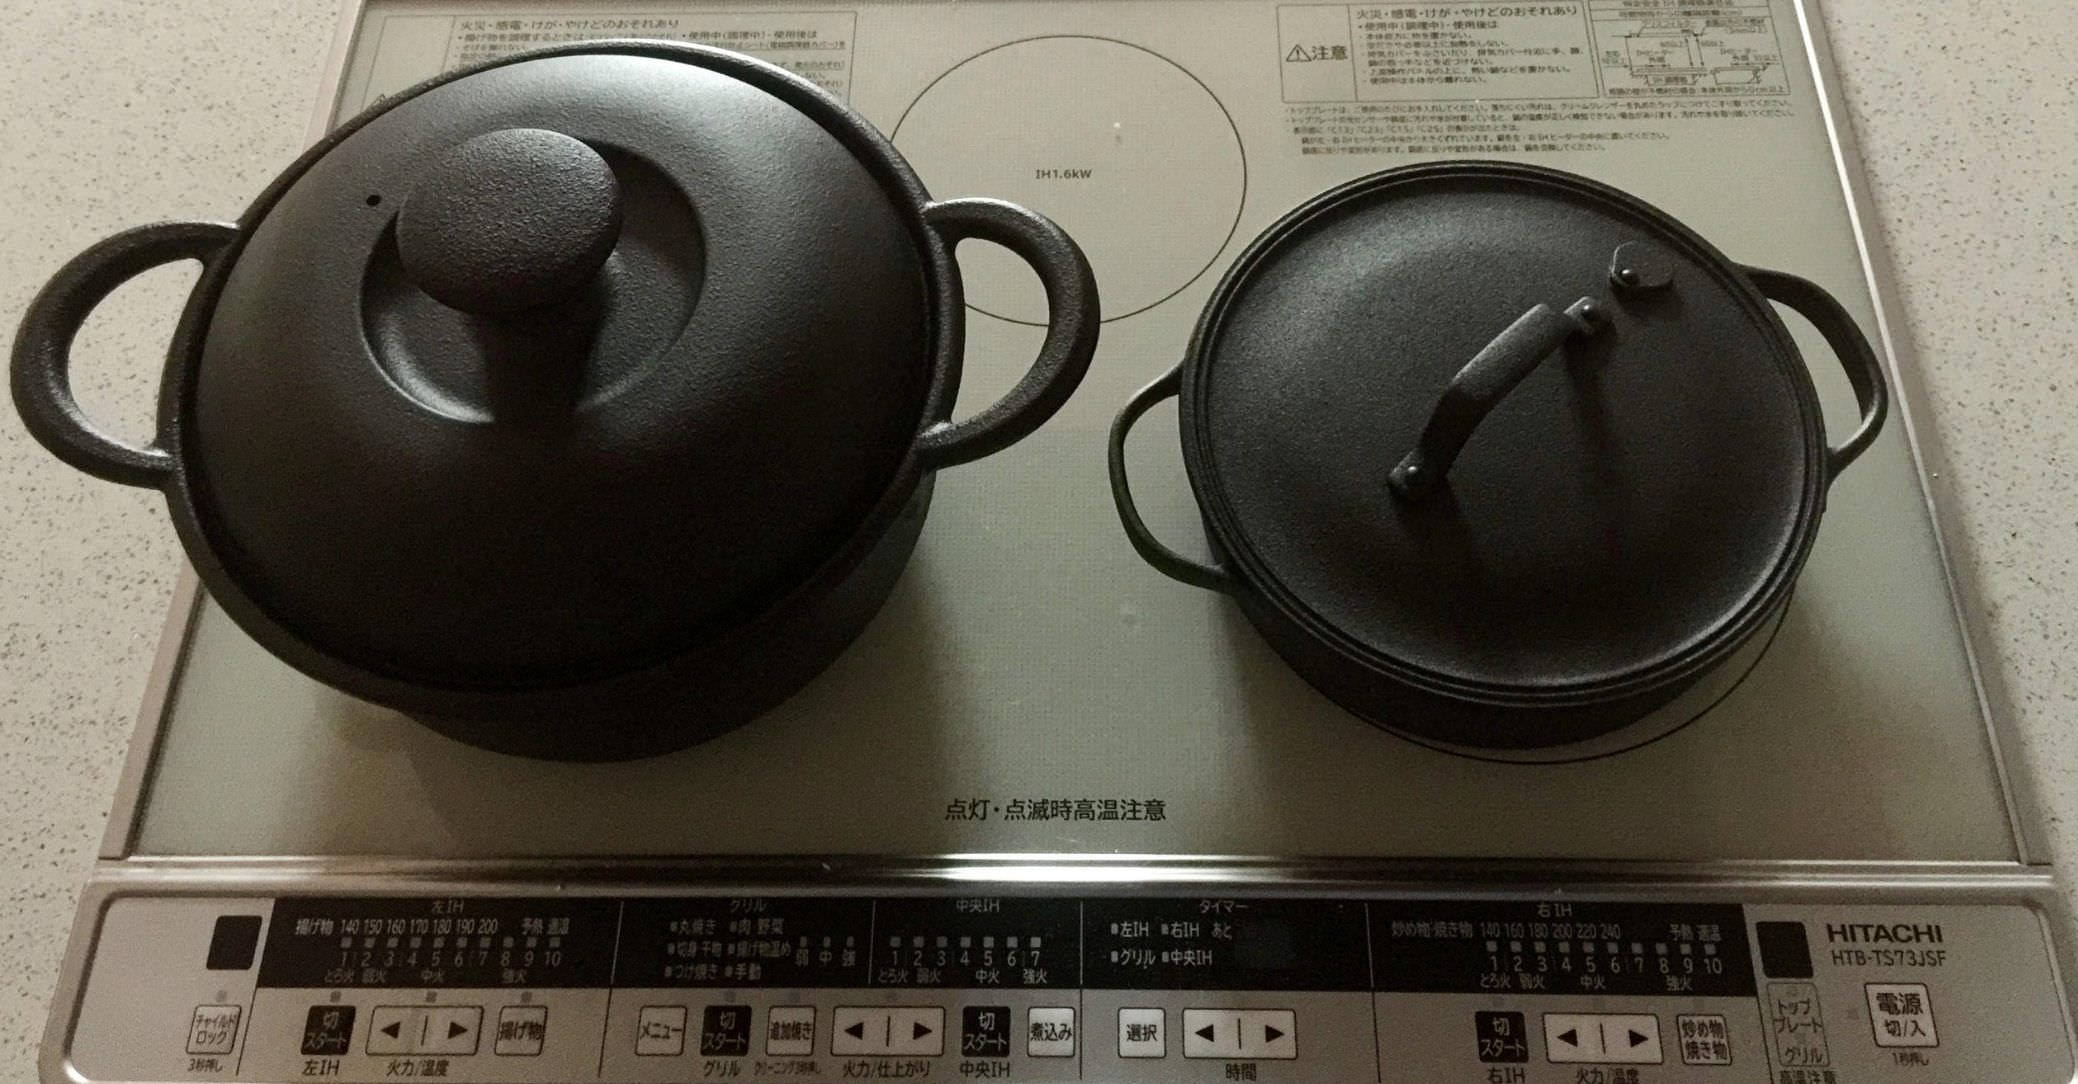 Dutch Oven vs. Braiser, Xtrema Cookware